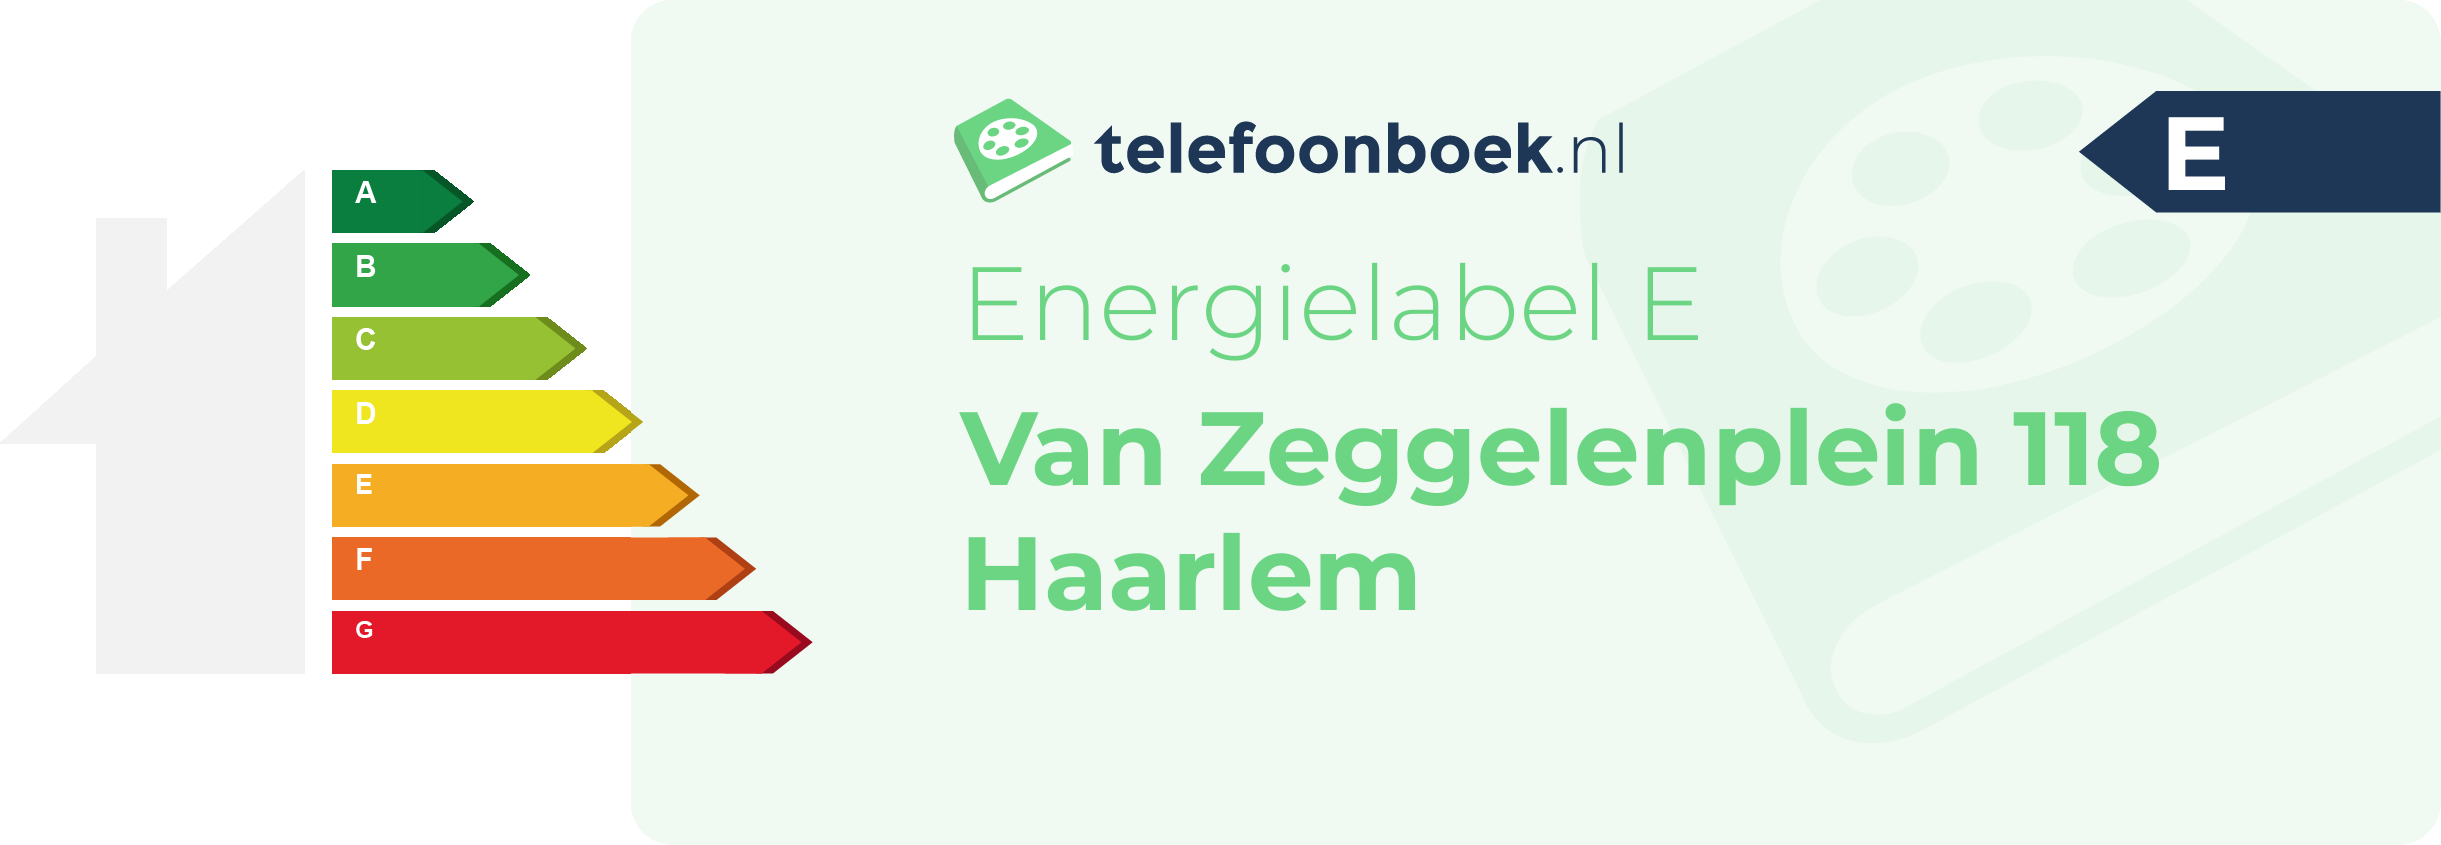 Energielabel Van Zeggelenplein 118 Haarlem